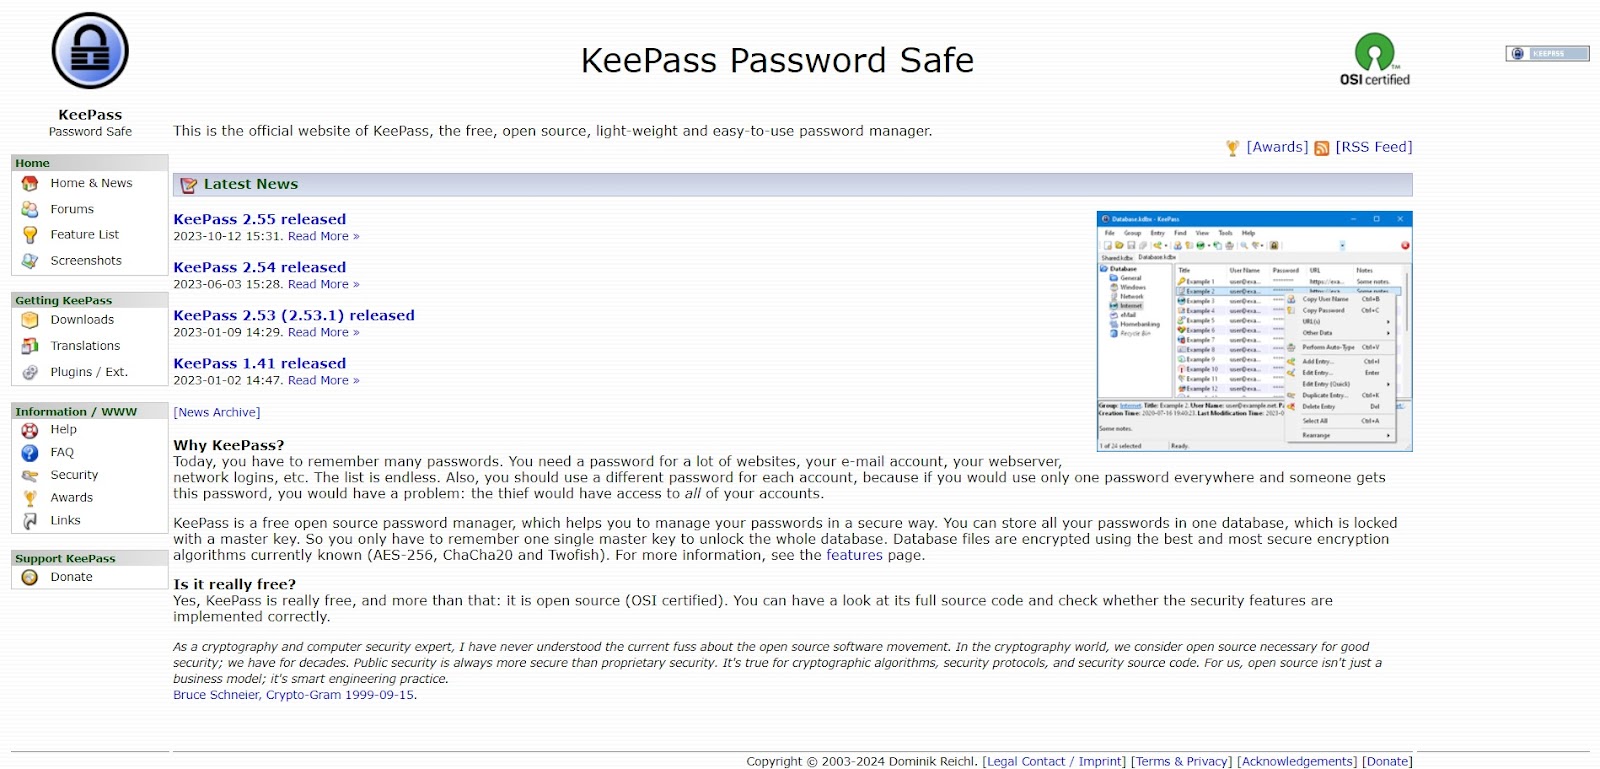 A screenshot of KeePass' website